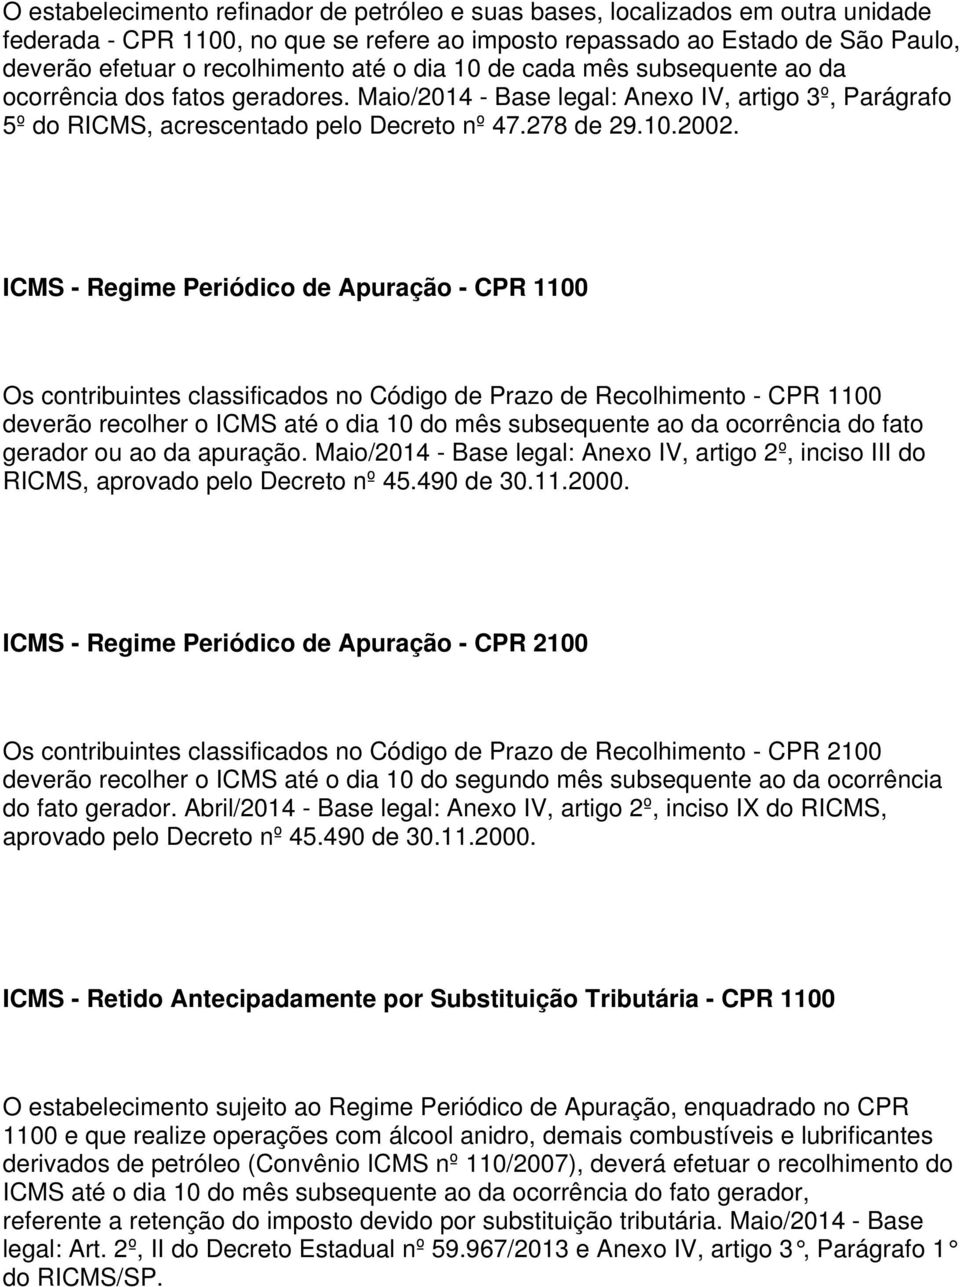 ICMS - Regime Periódico de Apuração - CPR 1100 Os contribuintes classificados no Código de Prazo de Recolhimento - CPR 1100 deverão recolher o ICMS até o dia 10 do mês subsequente ao da ocorrência do